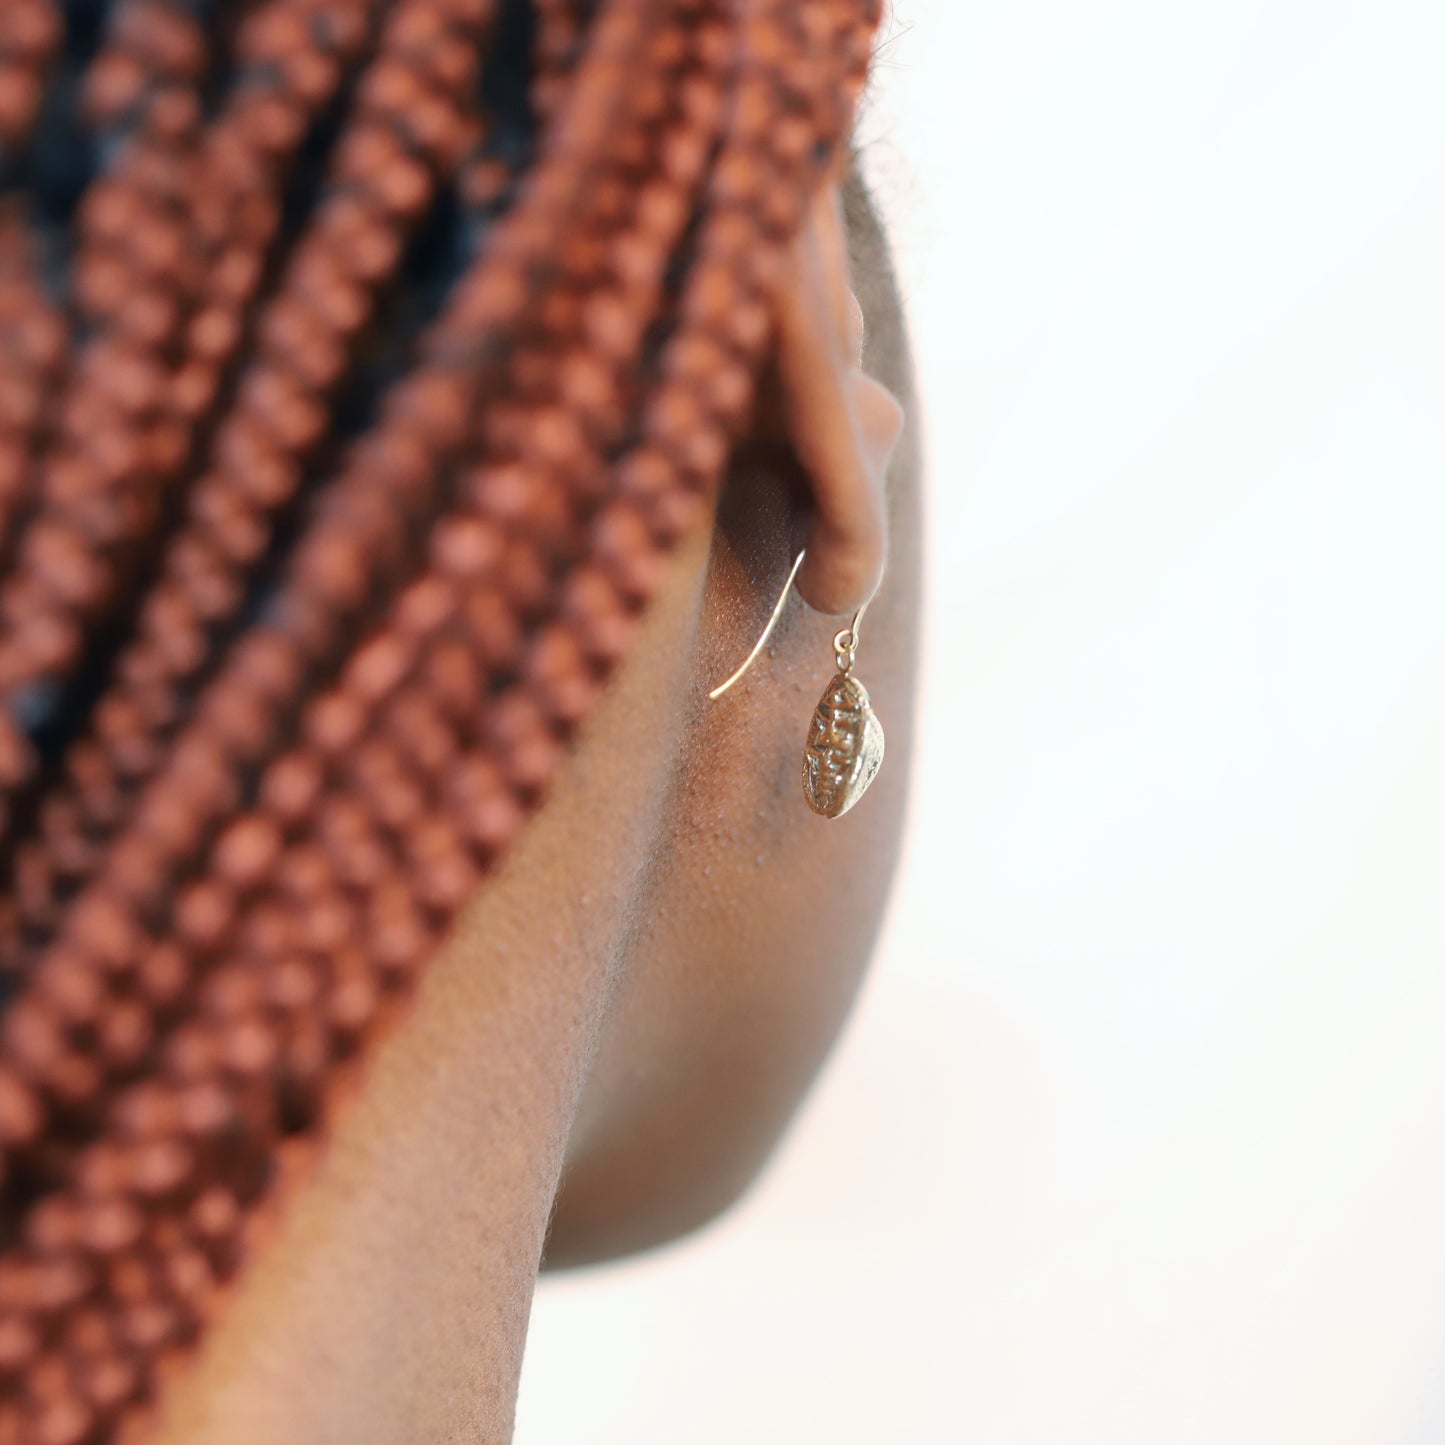 9ct Gold Scarab Earrings with Tsavorite Eyes